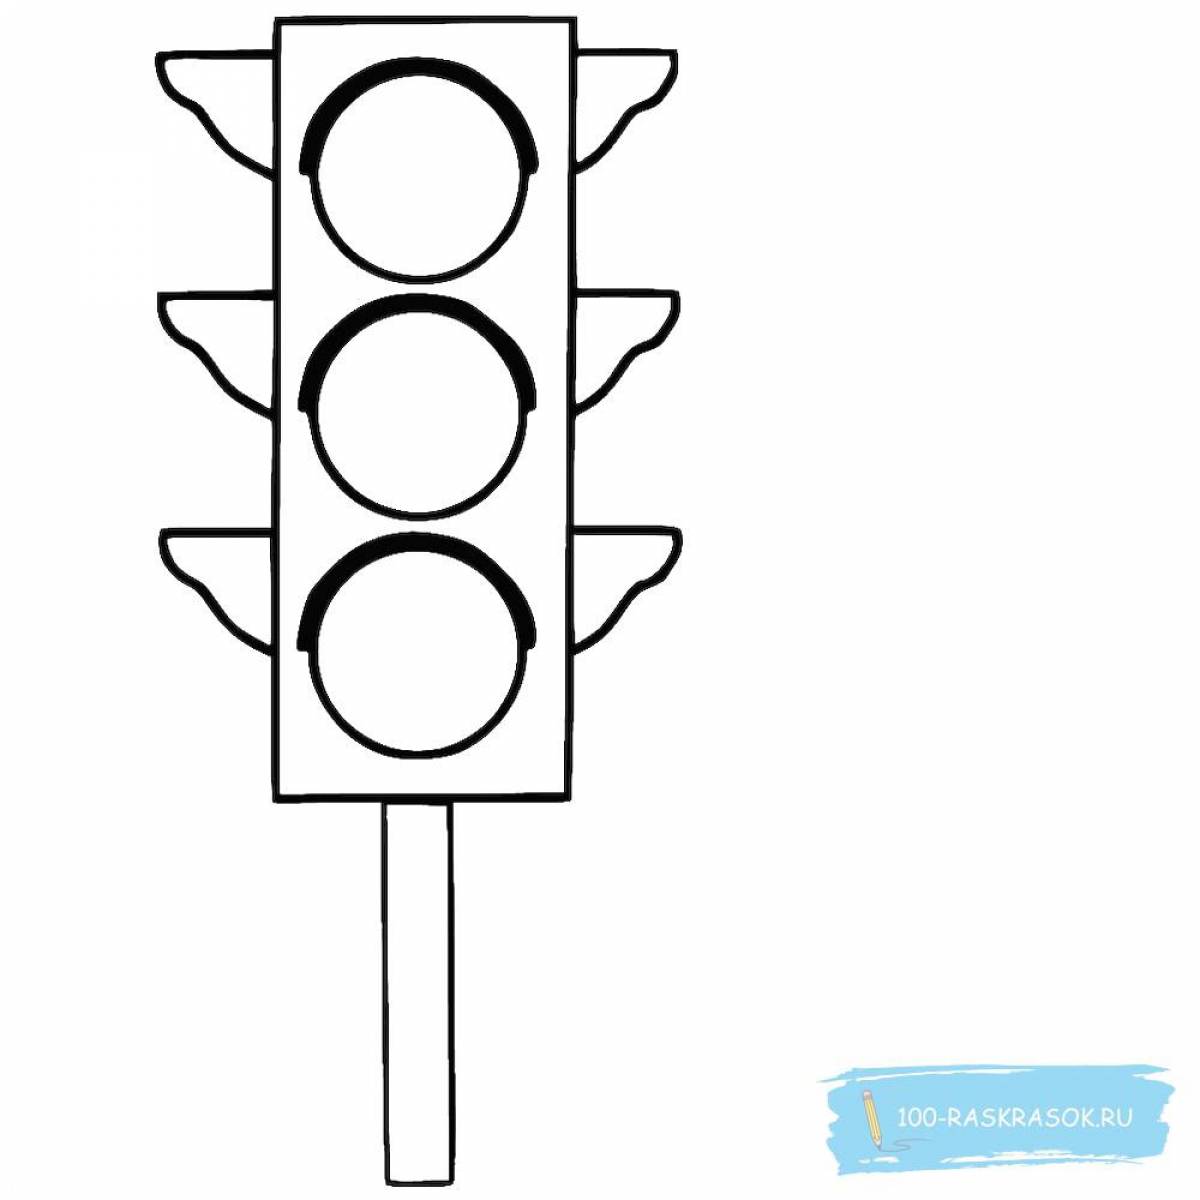 Traffic light for children 6 7 years old #2